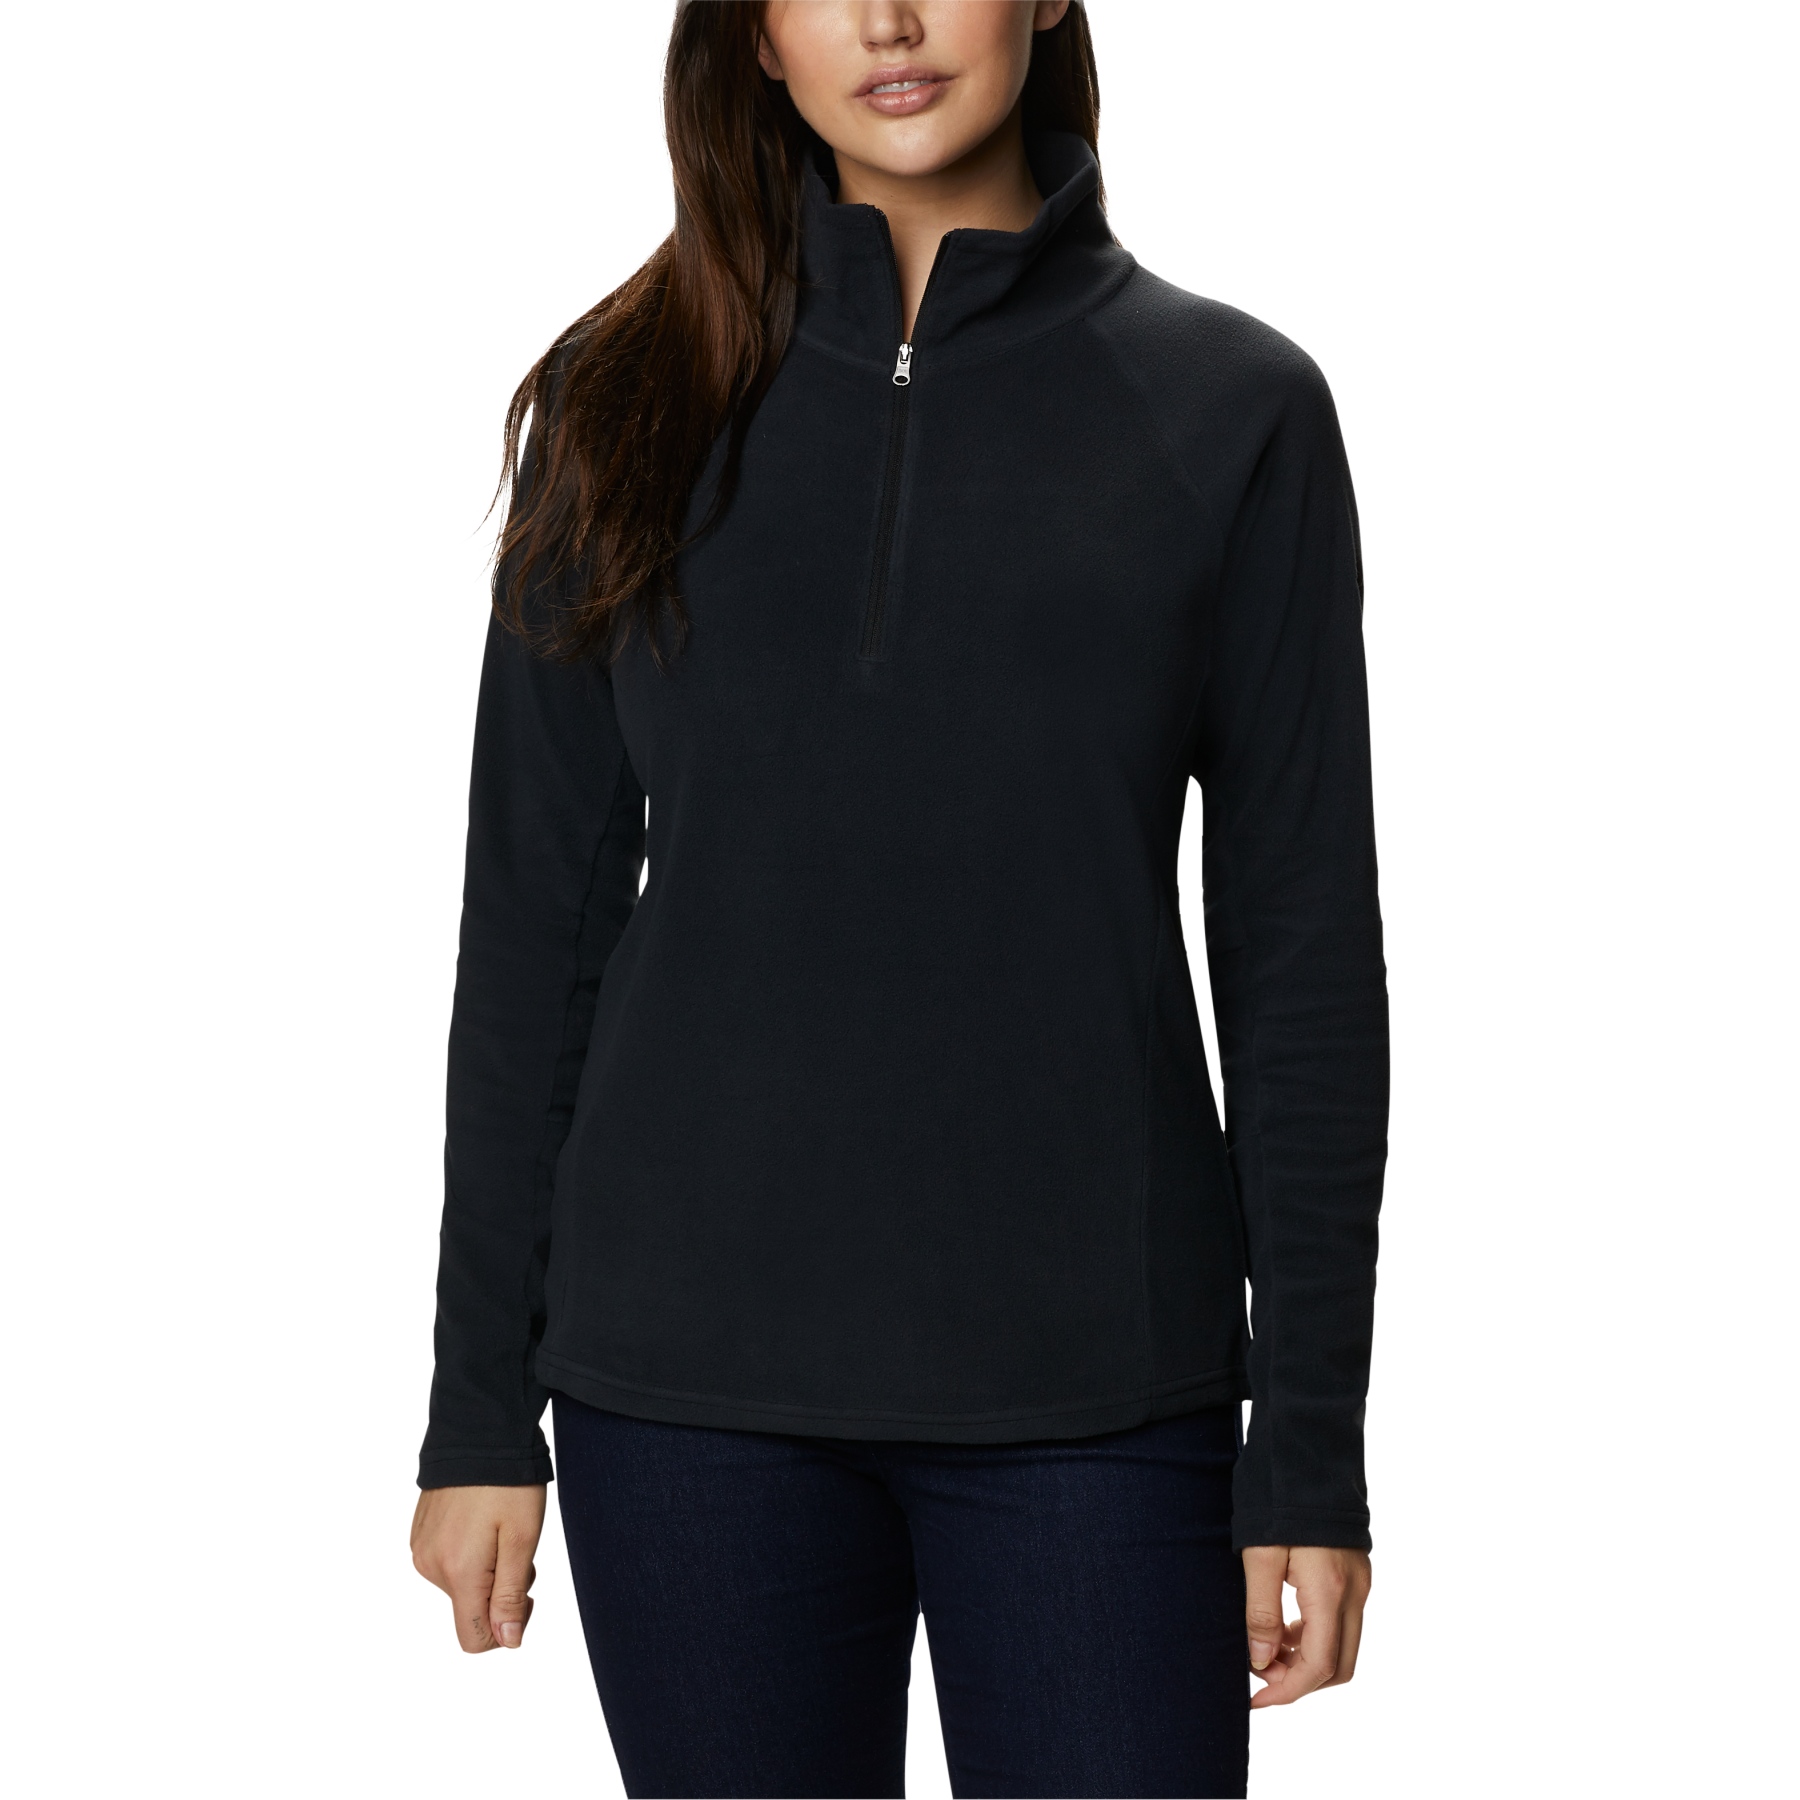 Productfoto van Columbia Glacial IV Half Zip Shirt met Lange Mouwen Dames - Zwart